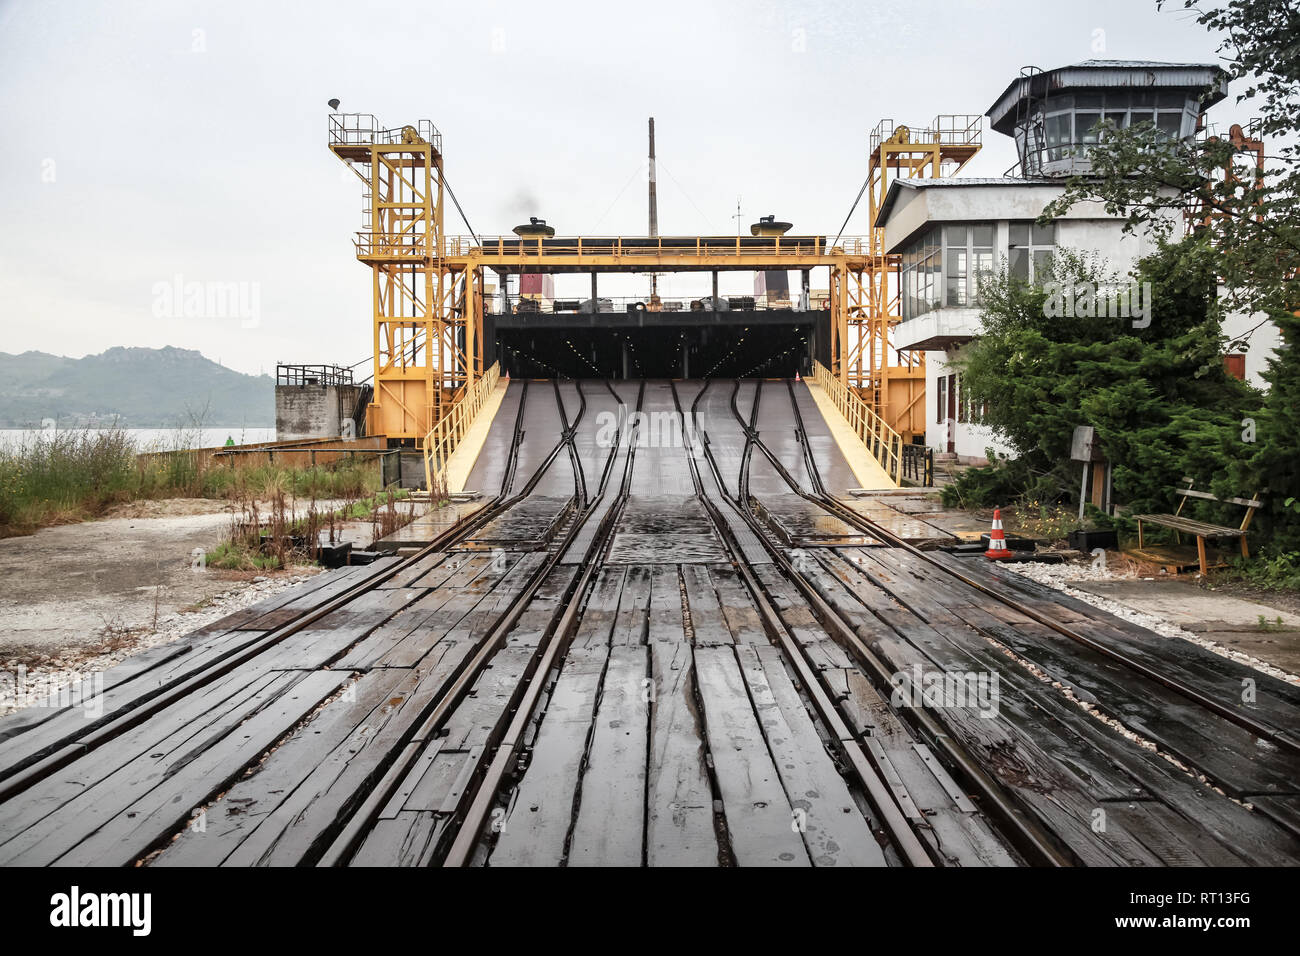 Vue en perspective de la rampe de fer pour les navires rouliers de chargement. Varna, Bulgarie complexe traversier-rail Banque D'Images